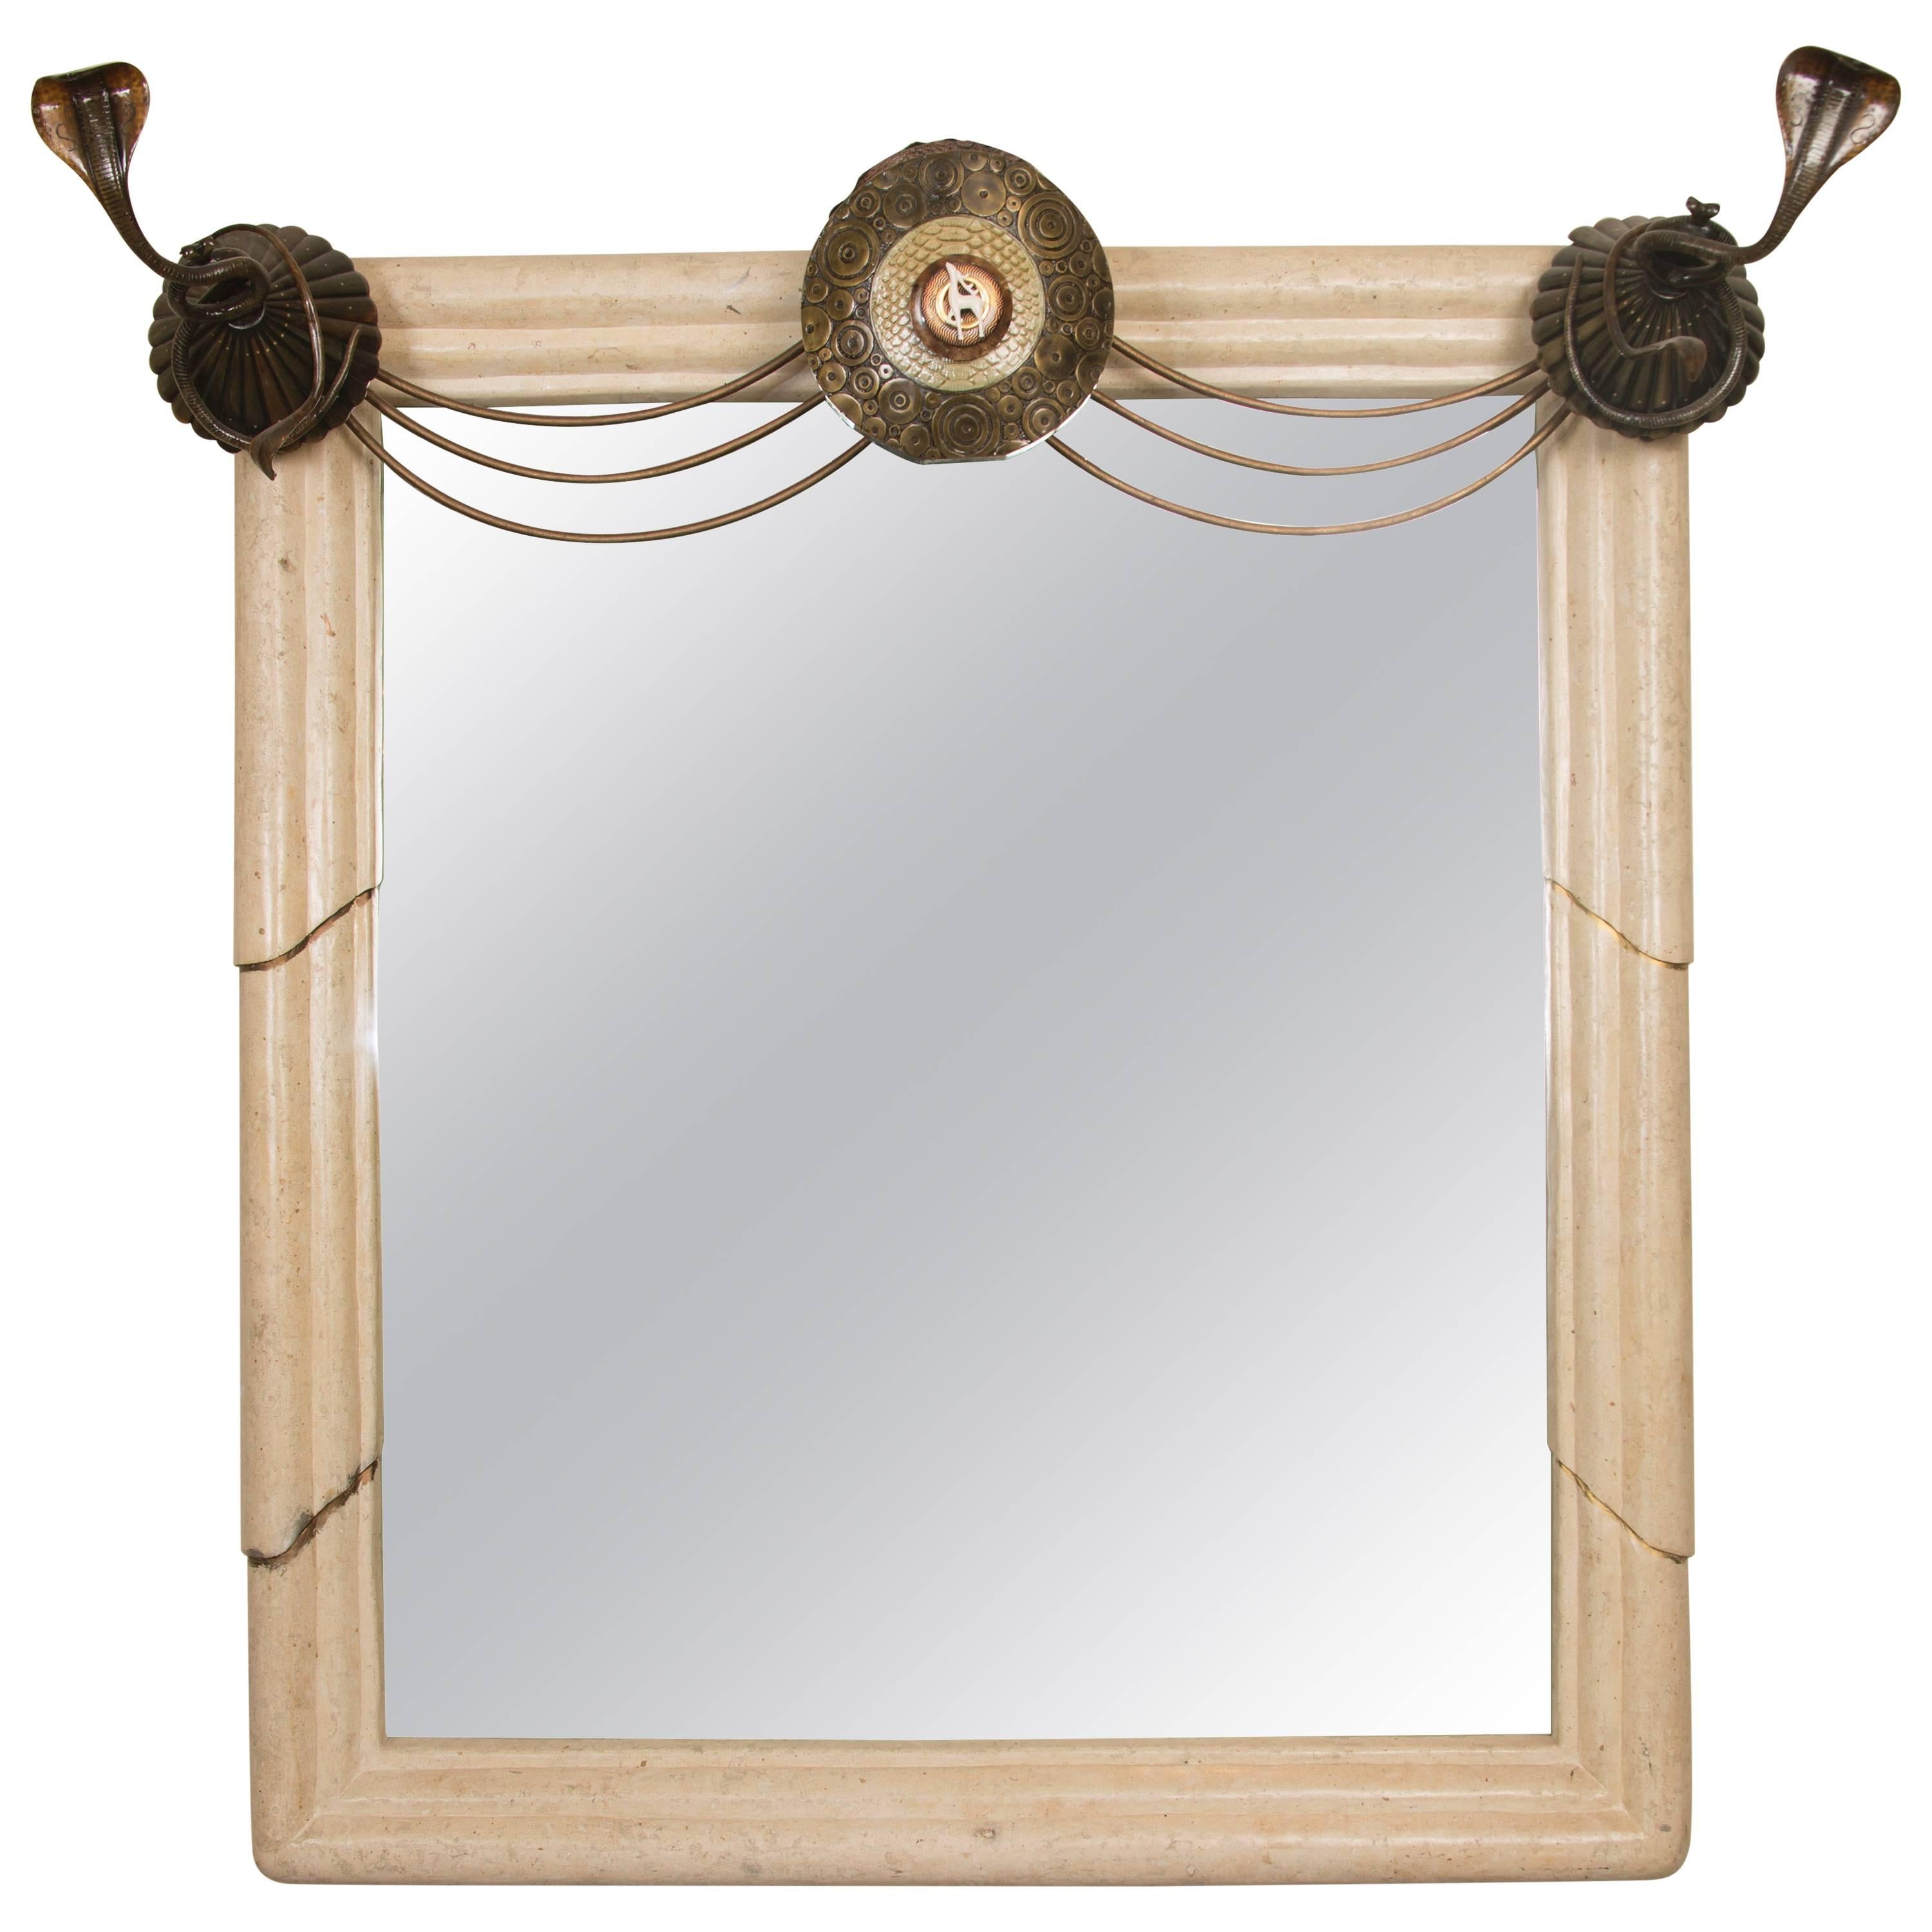 Art Deco Mirror with Edgar Brandt Decoration